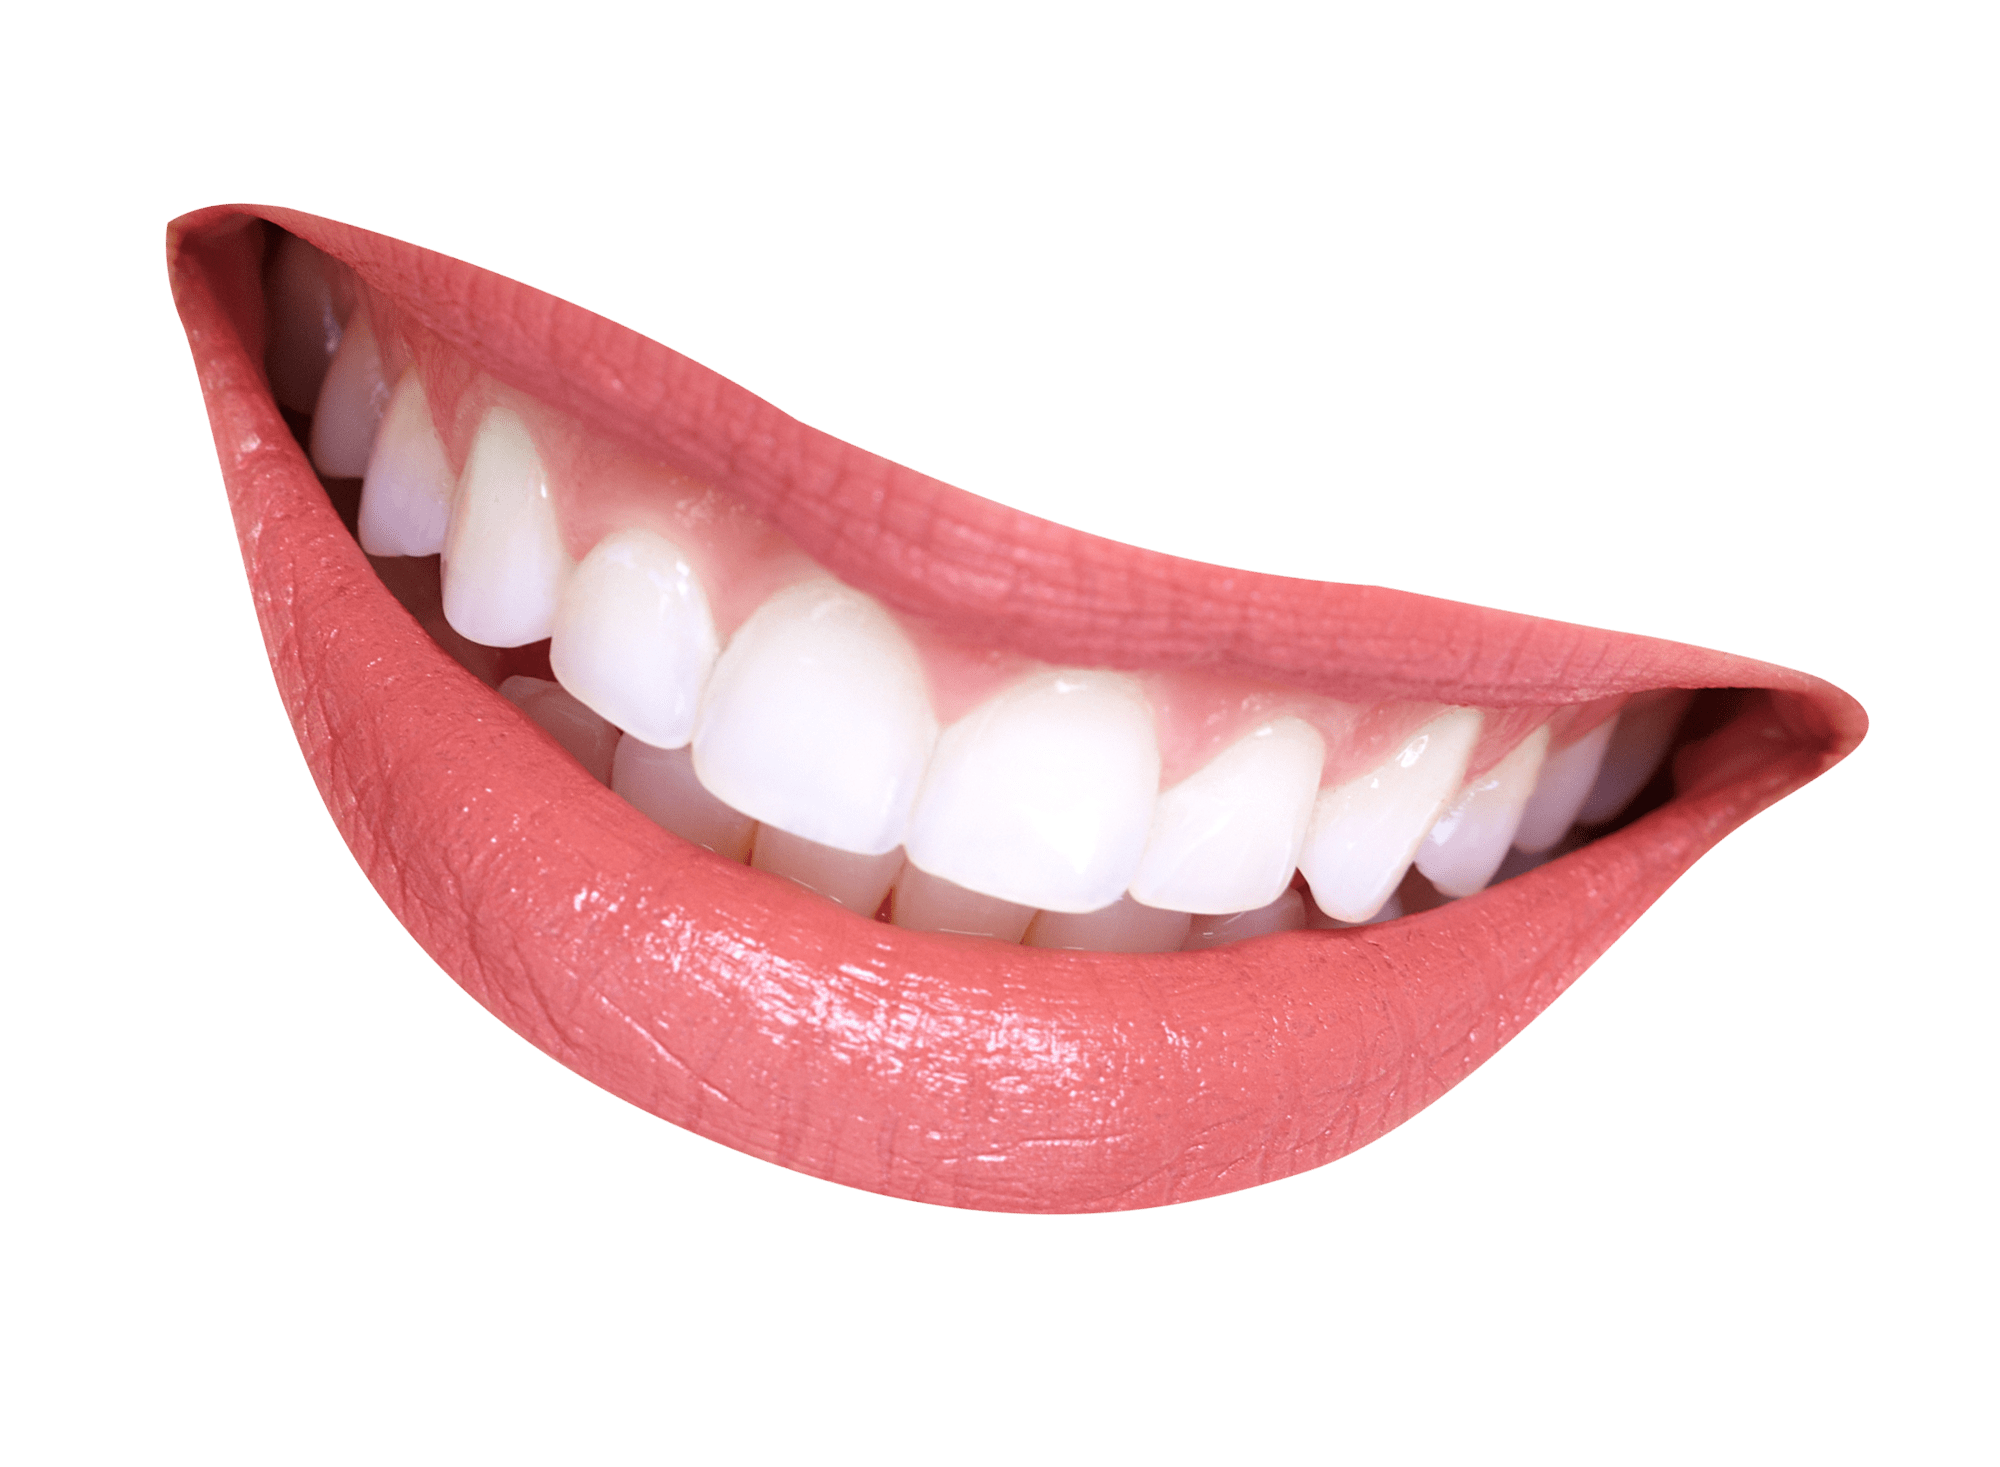 علاج اوجمنتين للأسنان واهم التحذيرات - موسوعة